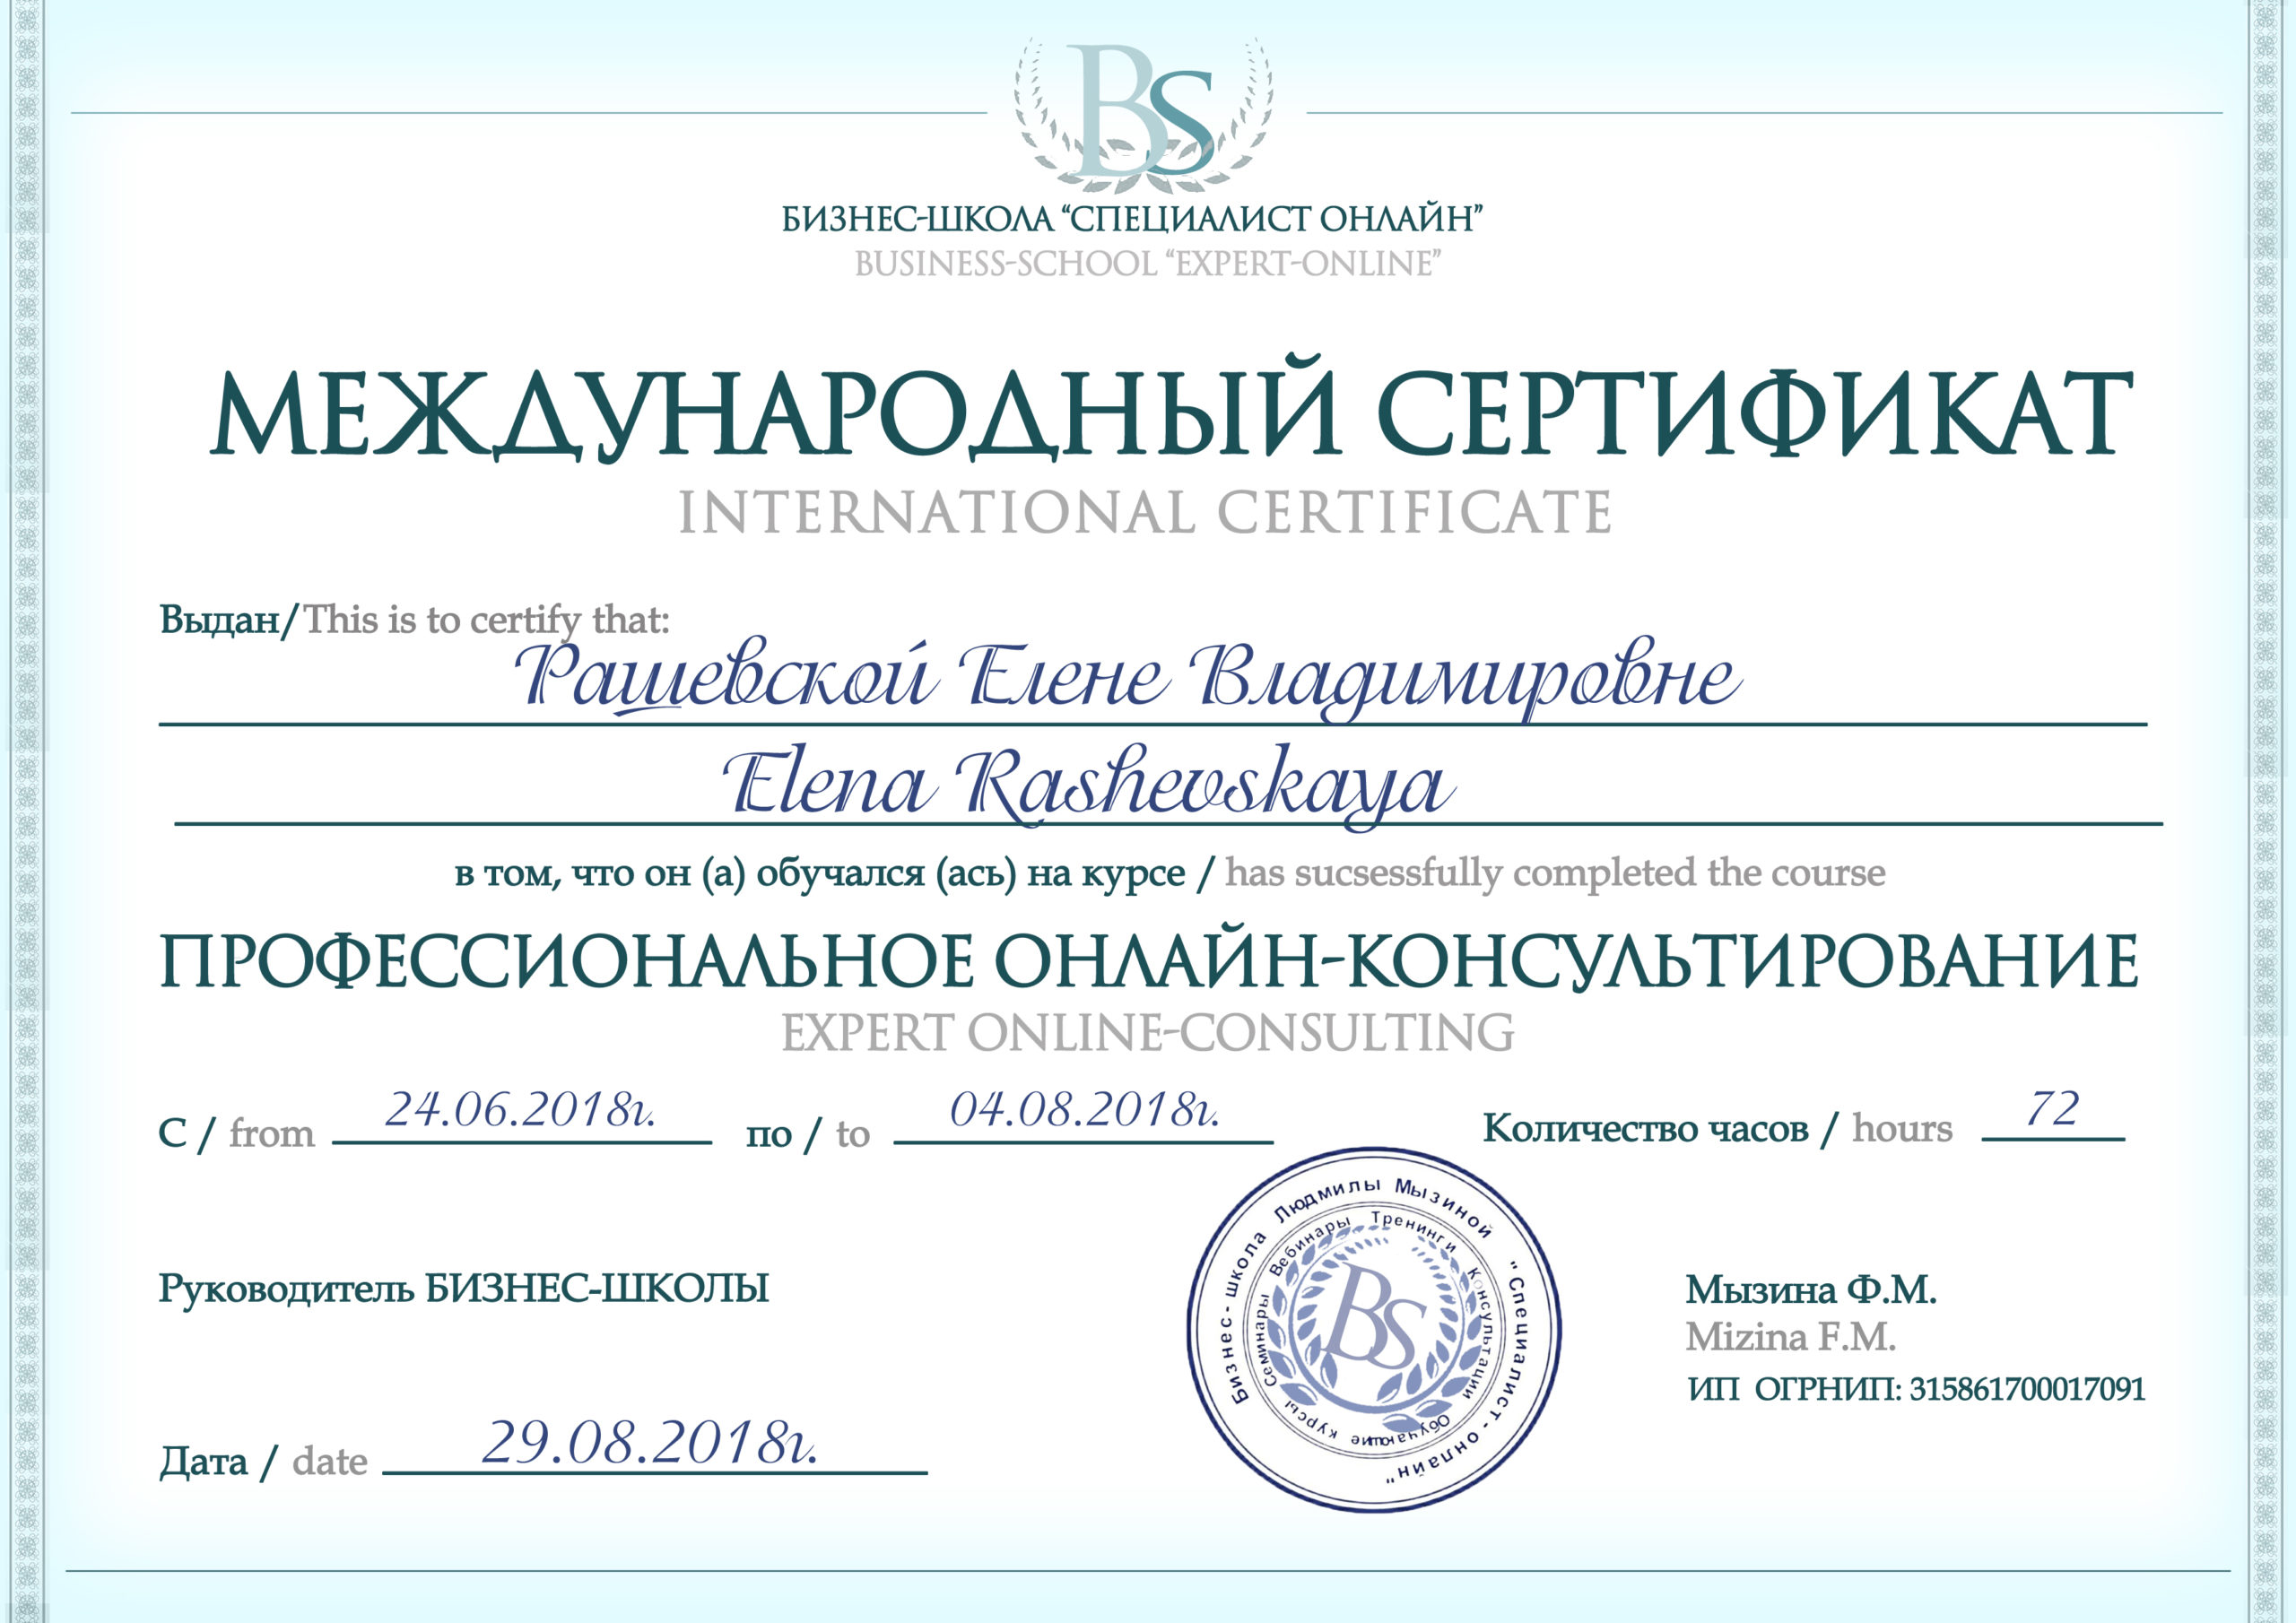 Сертификат по онлайн консультированию